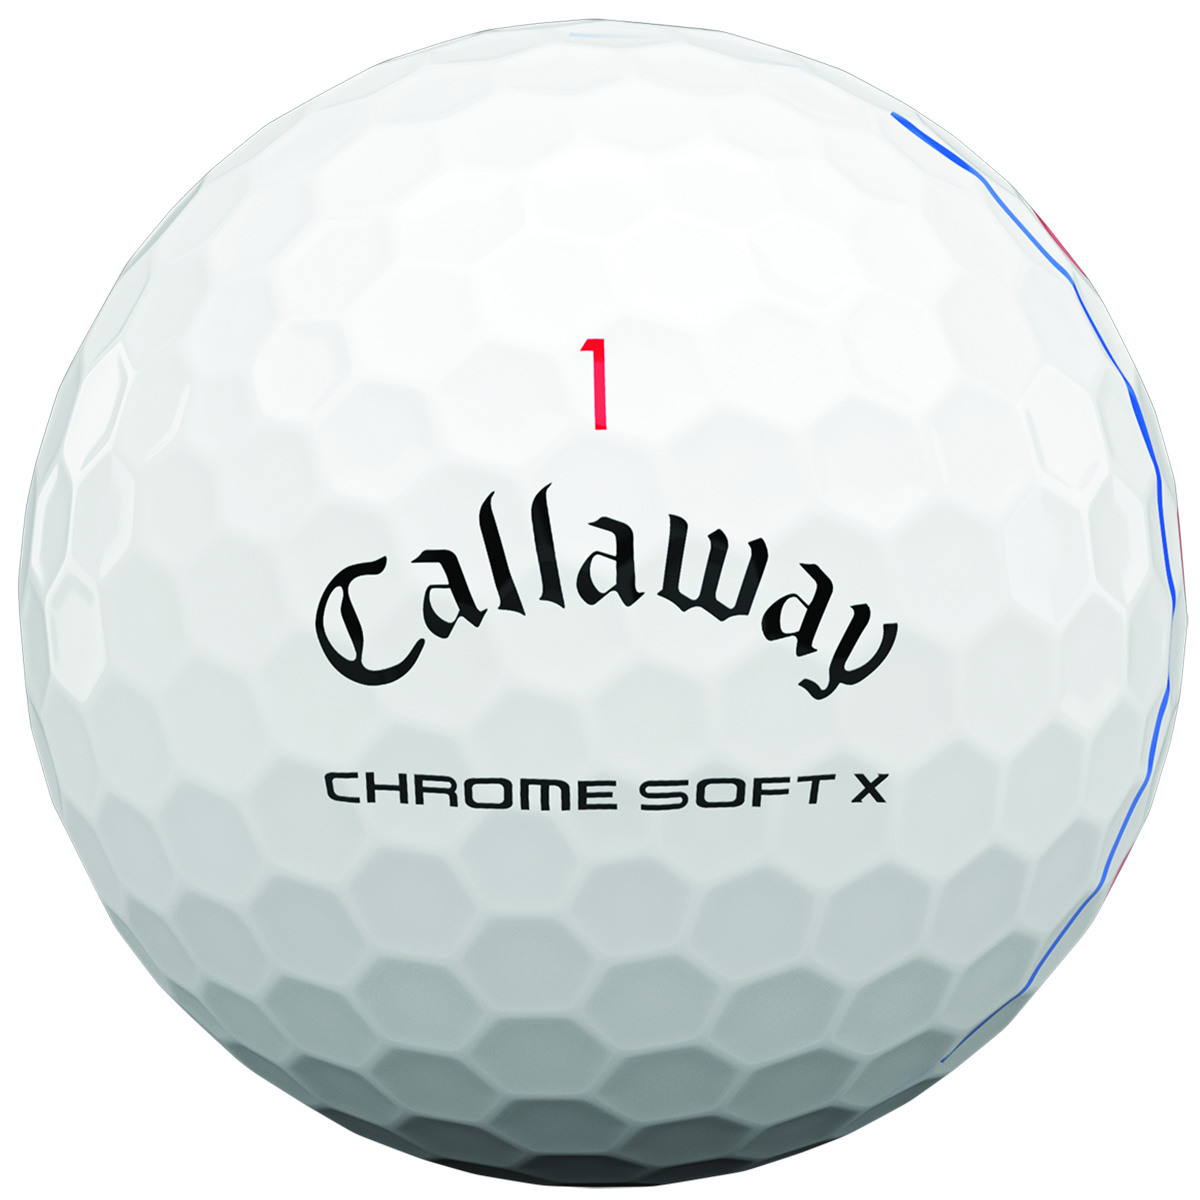 キャロウェイ クロムソフト X ボール（2020年）の試打レビュー 口コミ 